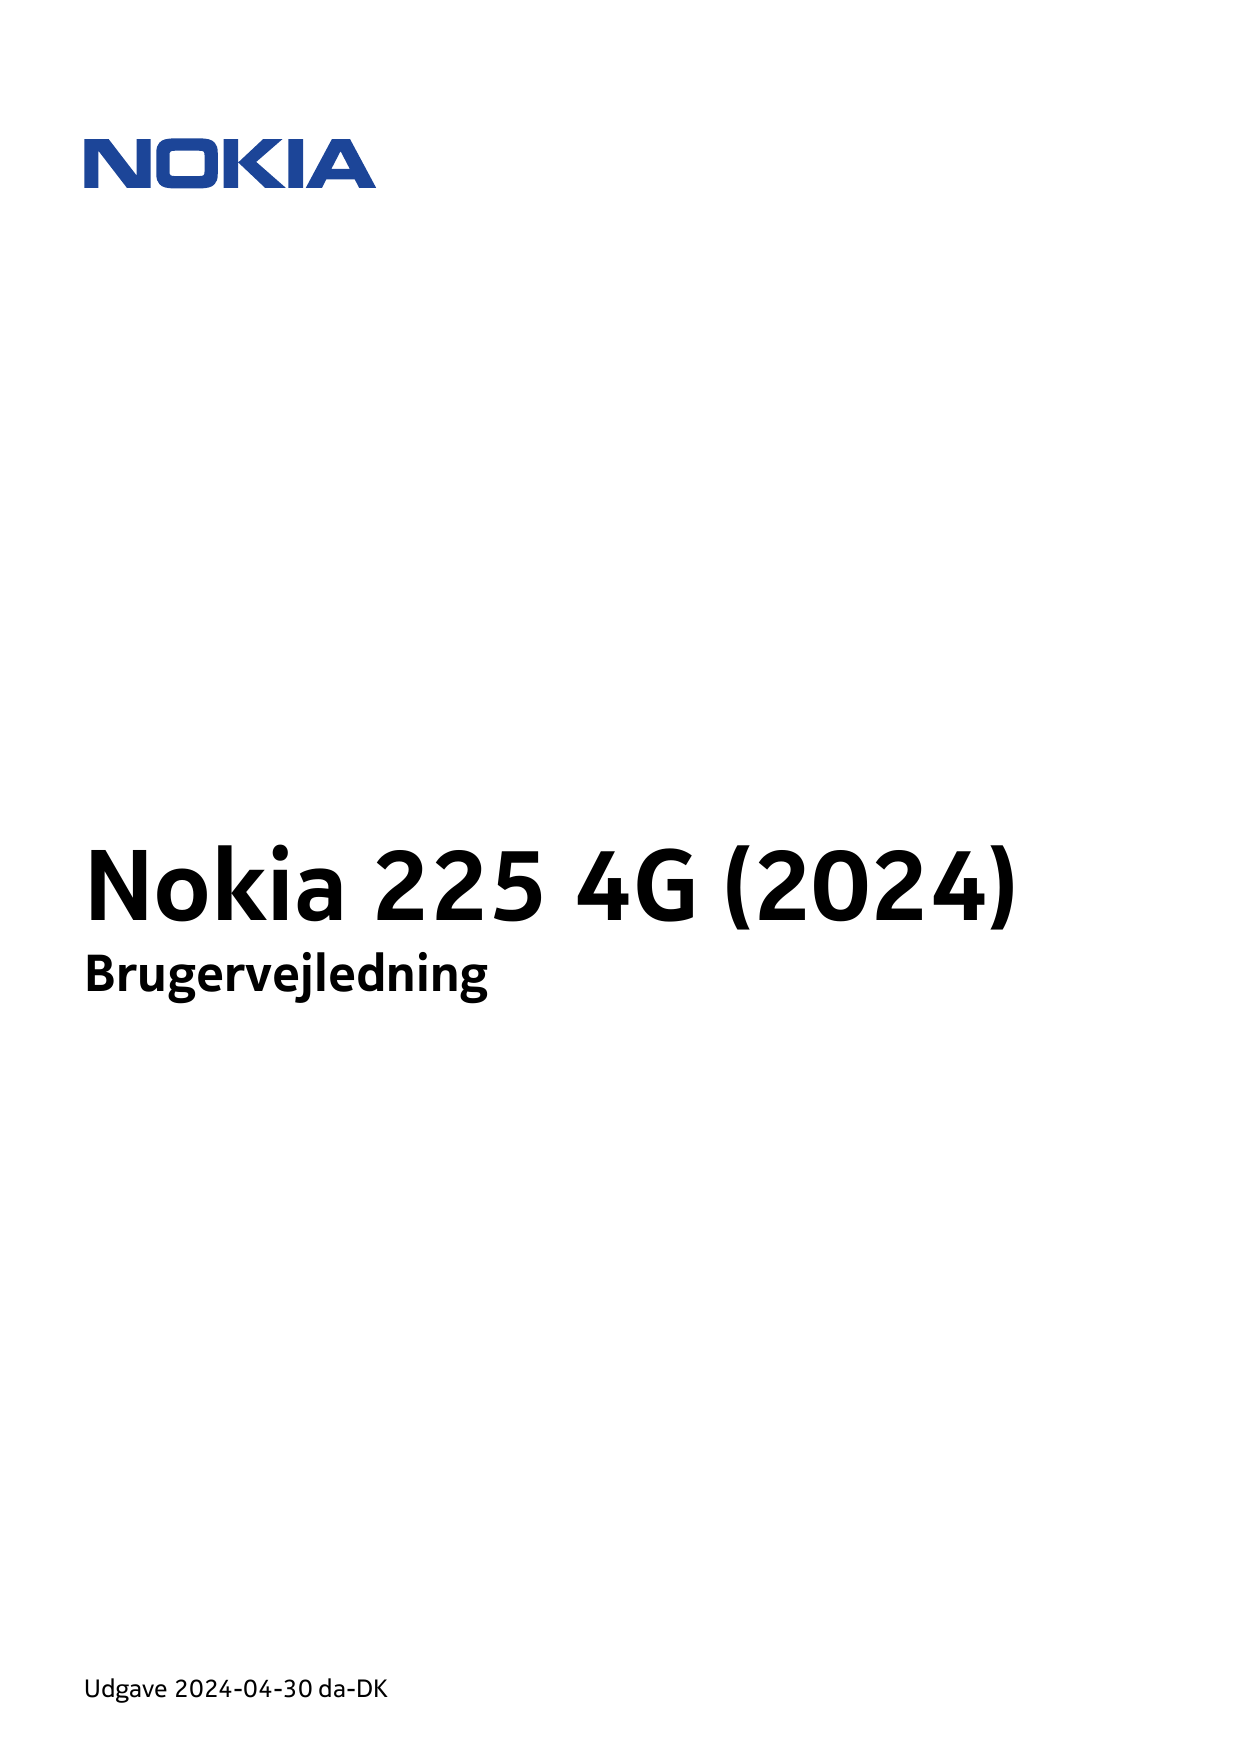 Nokia 225 4G (2024)BrugervejledningUdgave 2024-04-30 da-DK